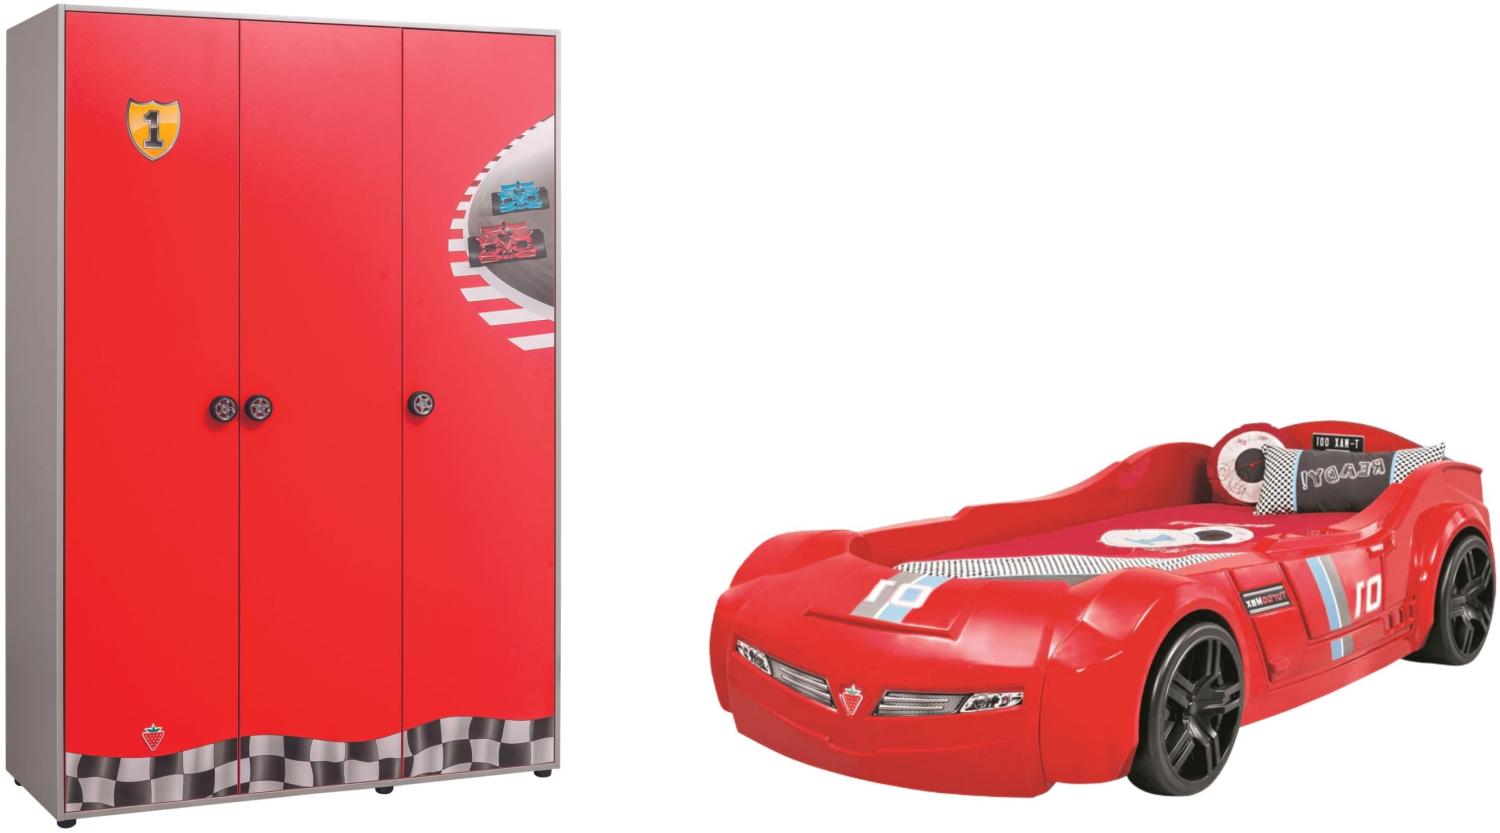 Cilek Pitstop Kinderzimmer 2-teilig mit Autobett Speed in Rot Komplettzimmer inkl. Matratze Bild 1